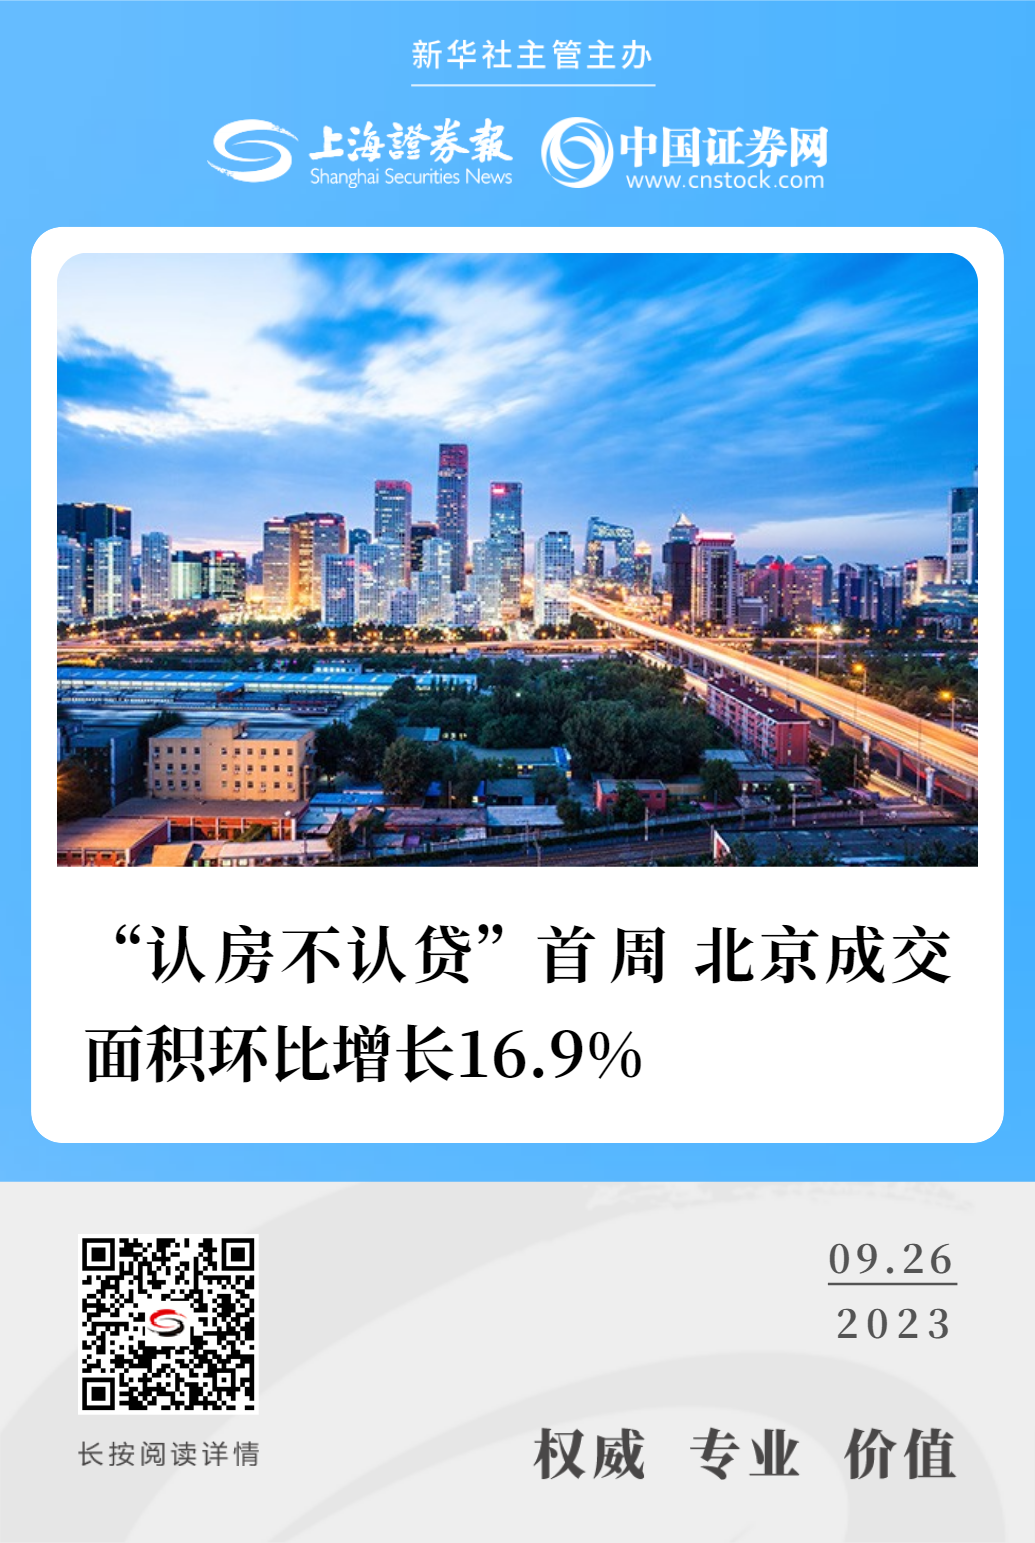 北京成交面积环比增长16.9%